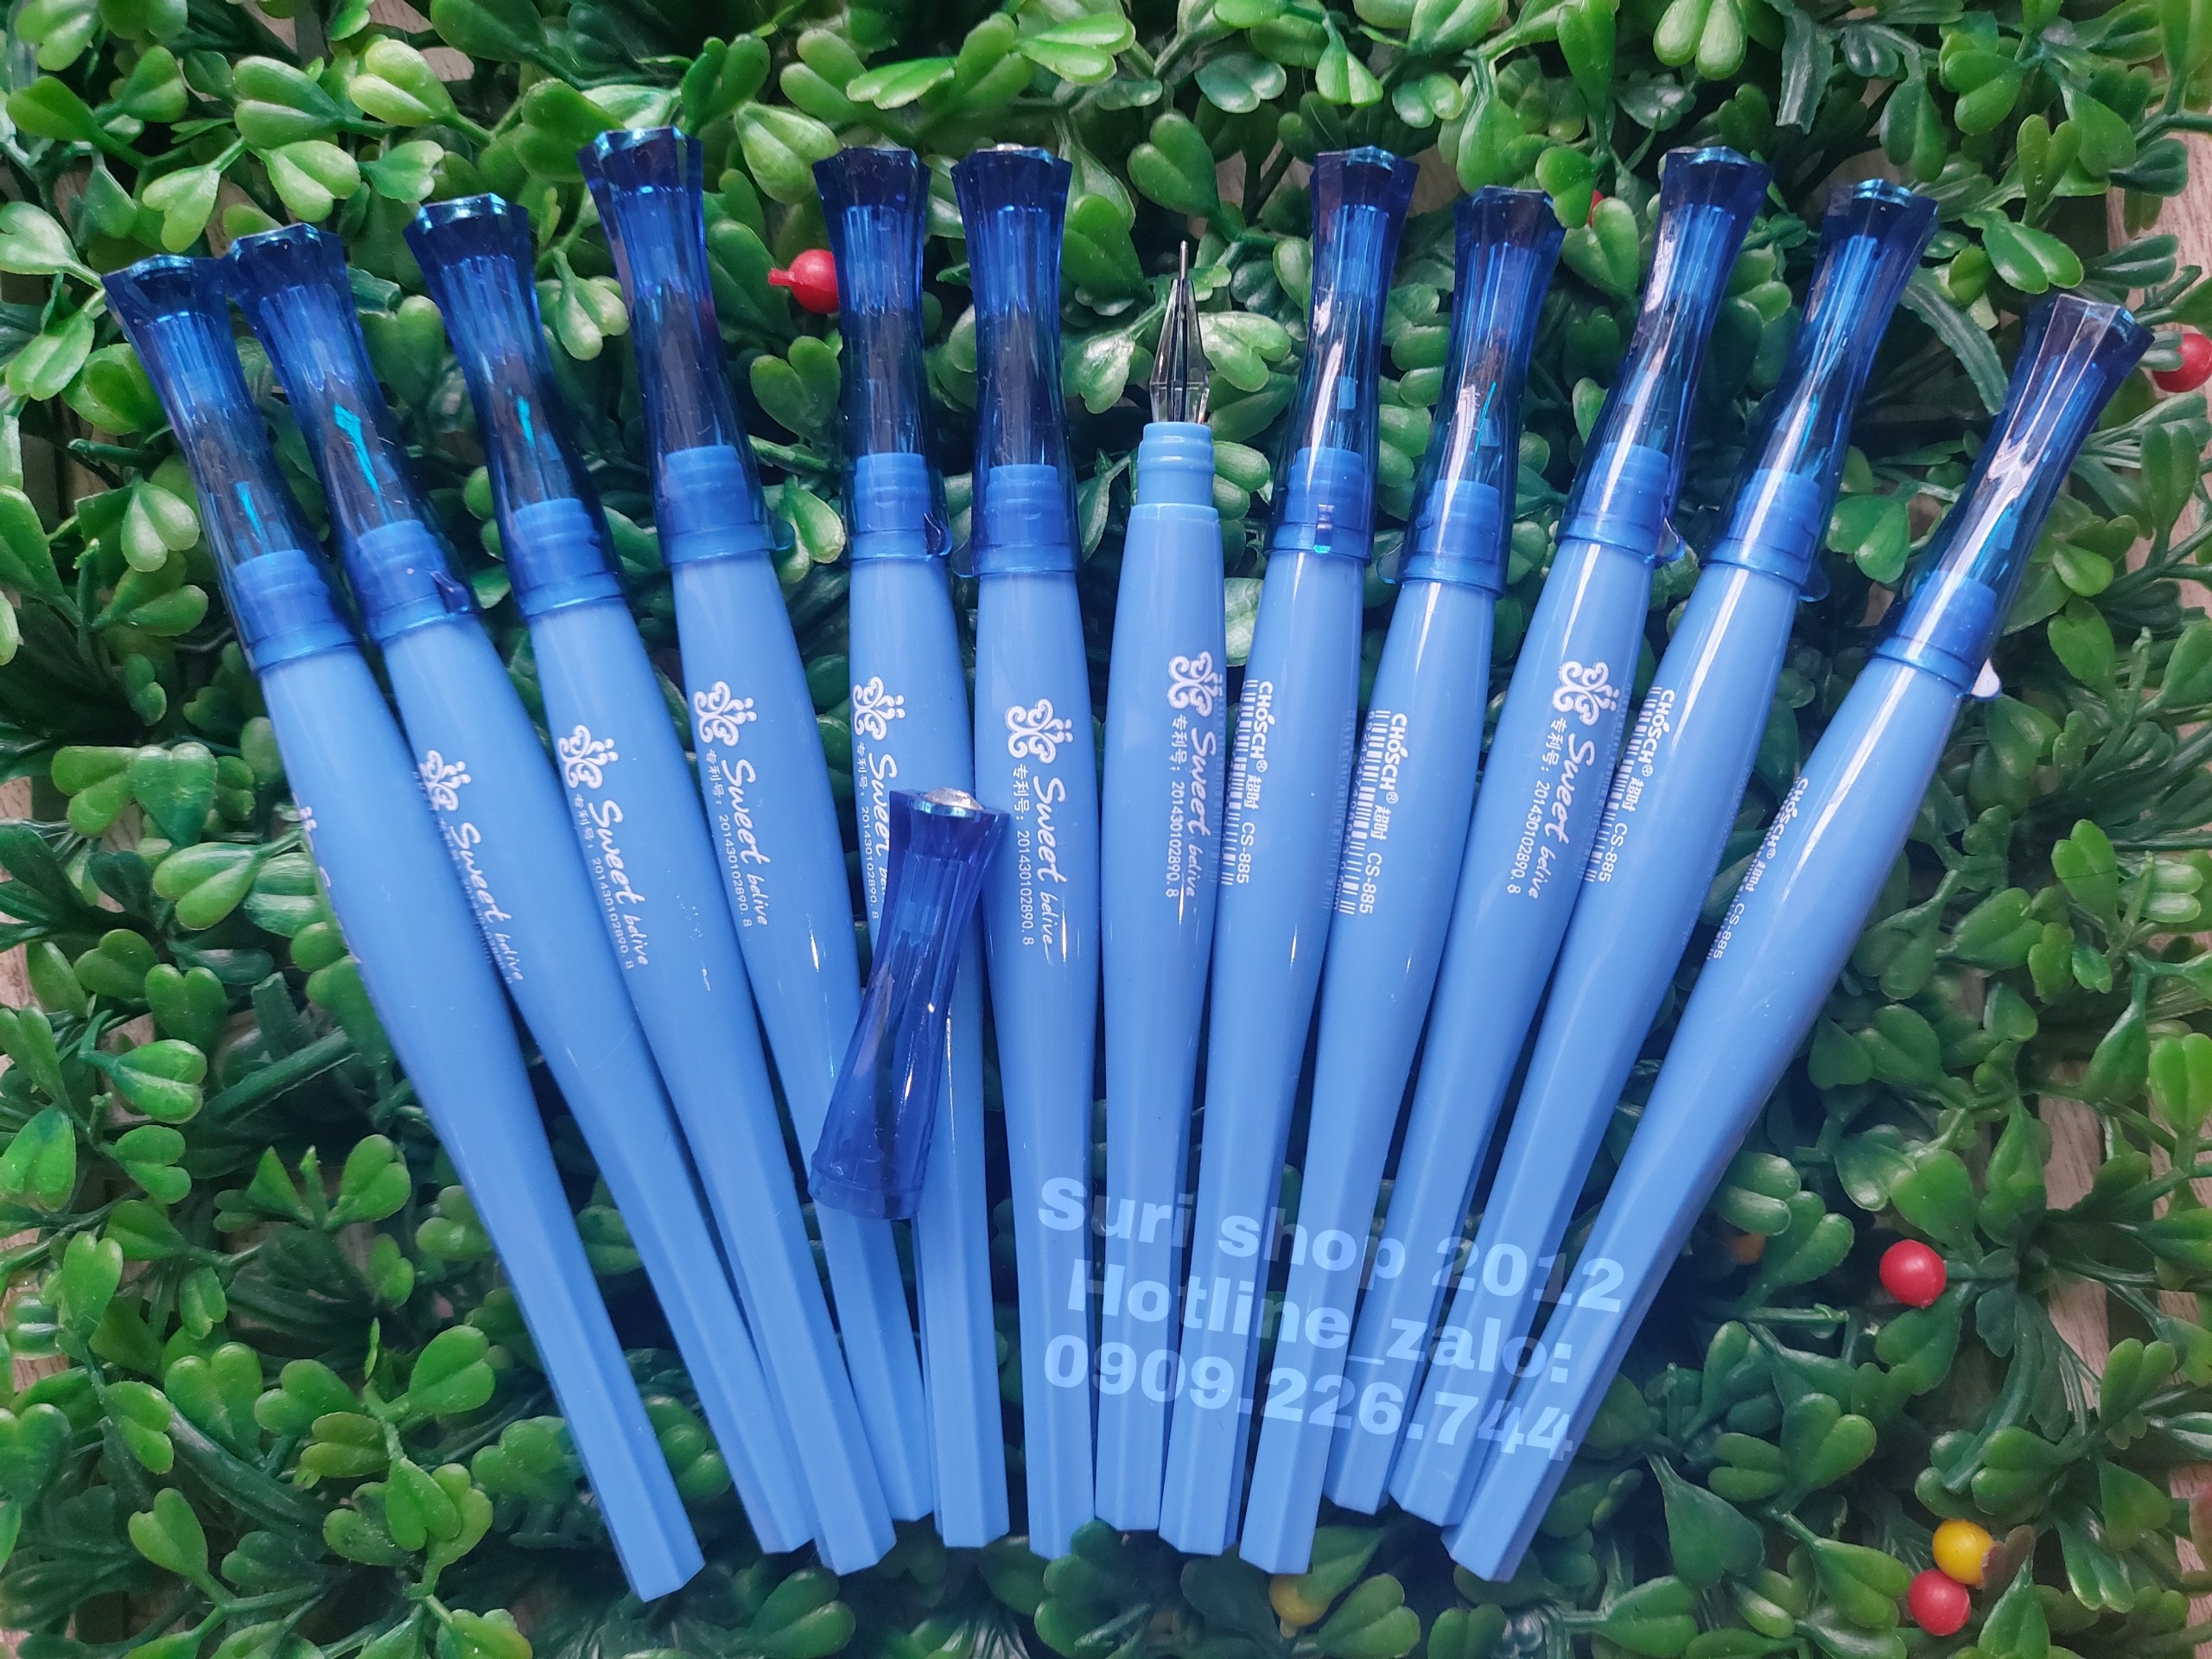 Hộp 12 cây bút gel mực xanh Chosch CS 885 phù hợp mọi độ tuổi